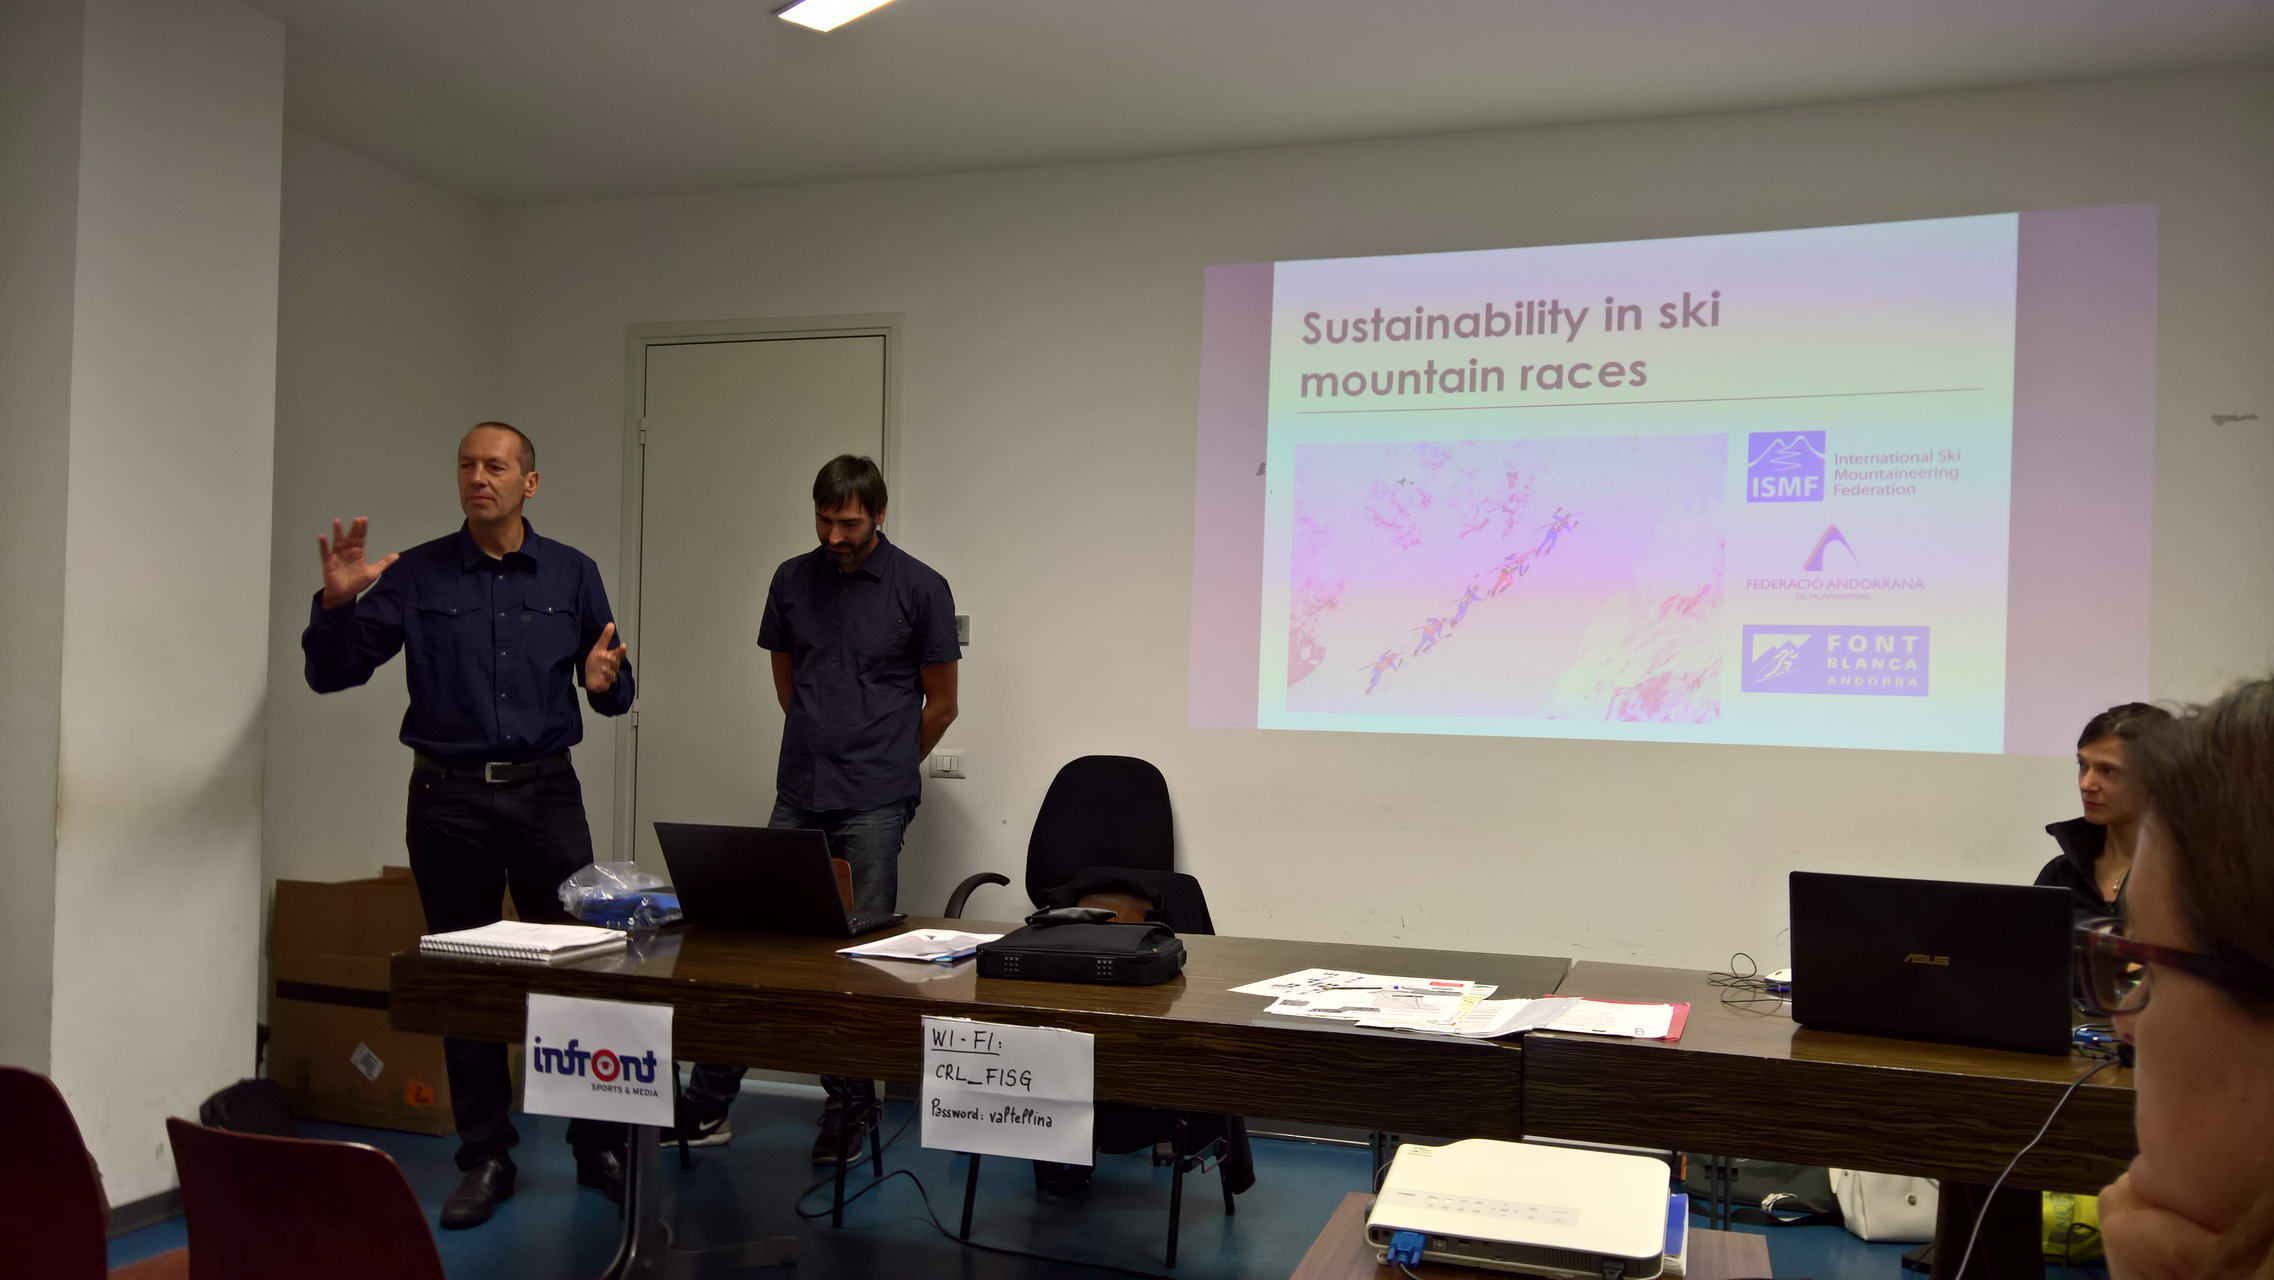 Andorra als Vorbild für nachhaltige Rennveranstaltungen